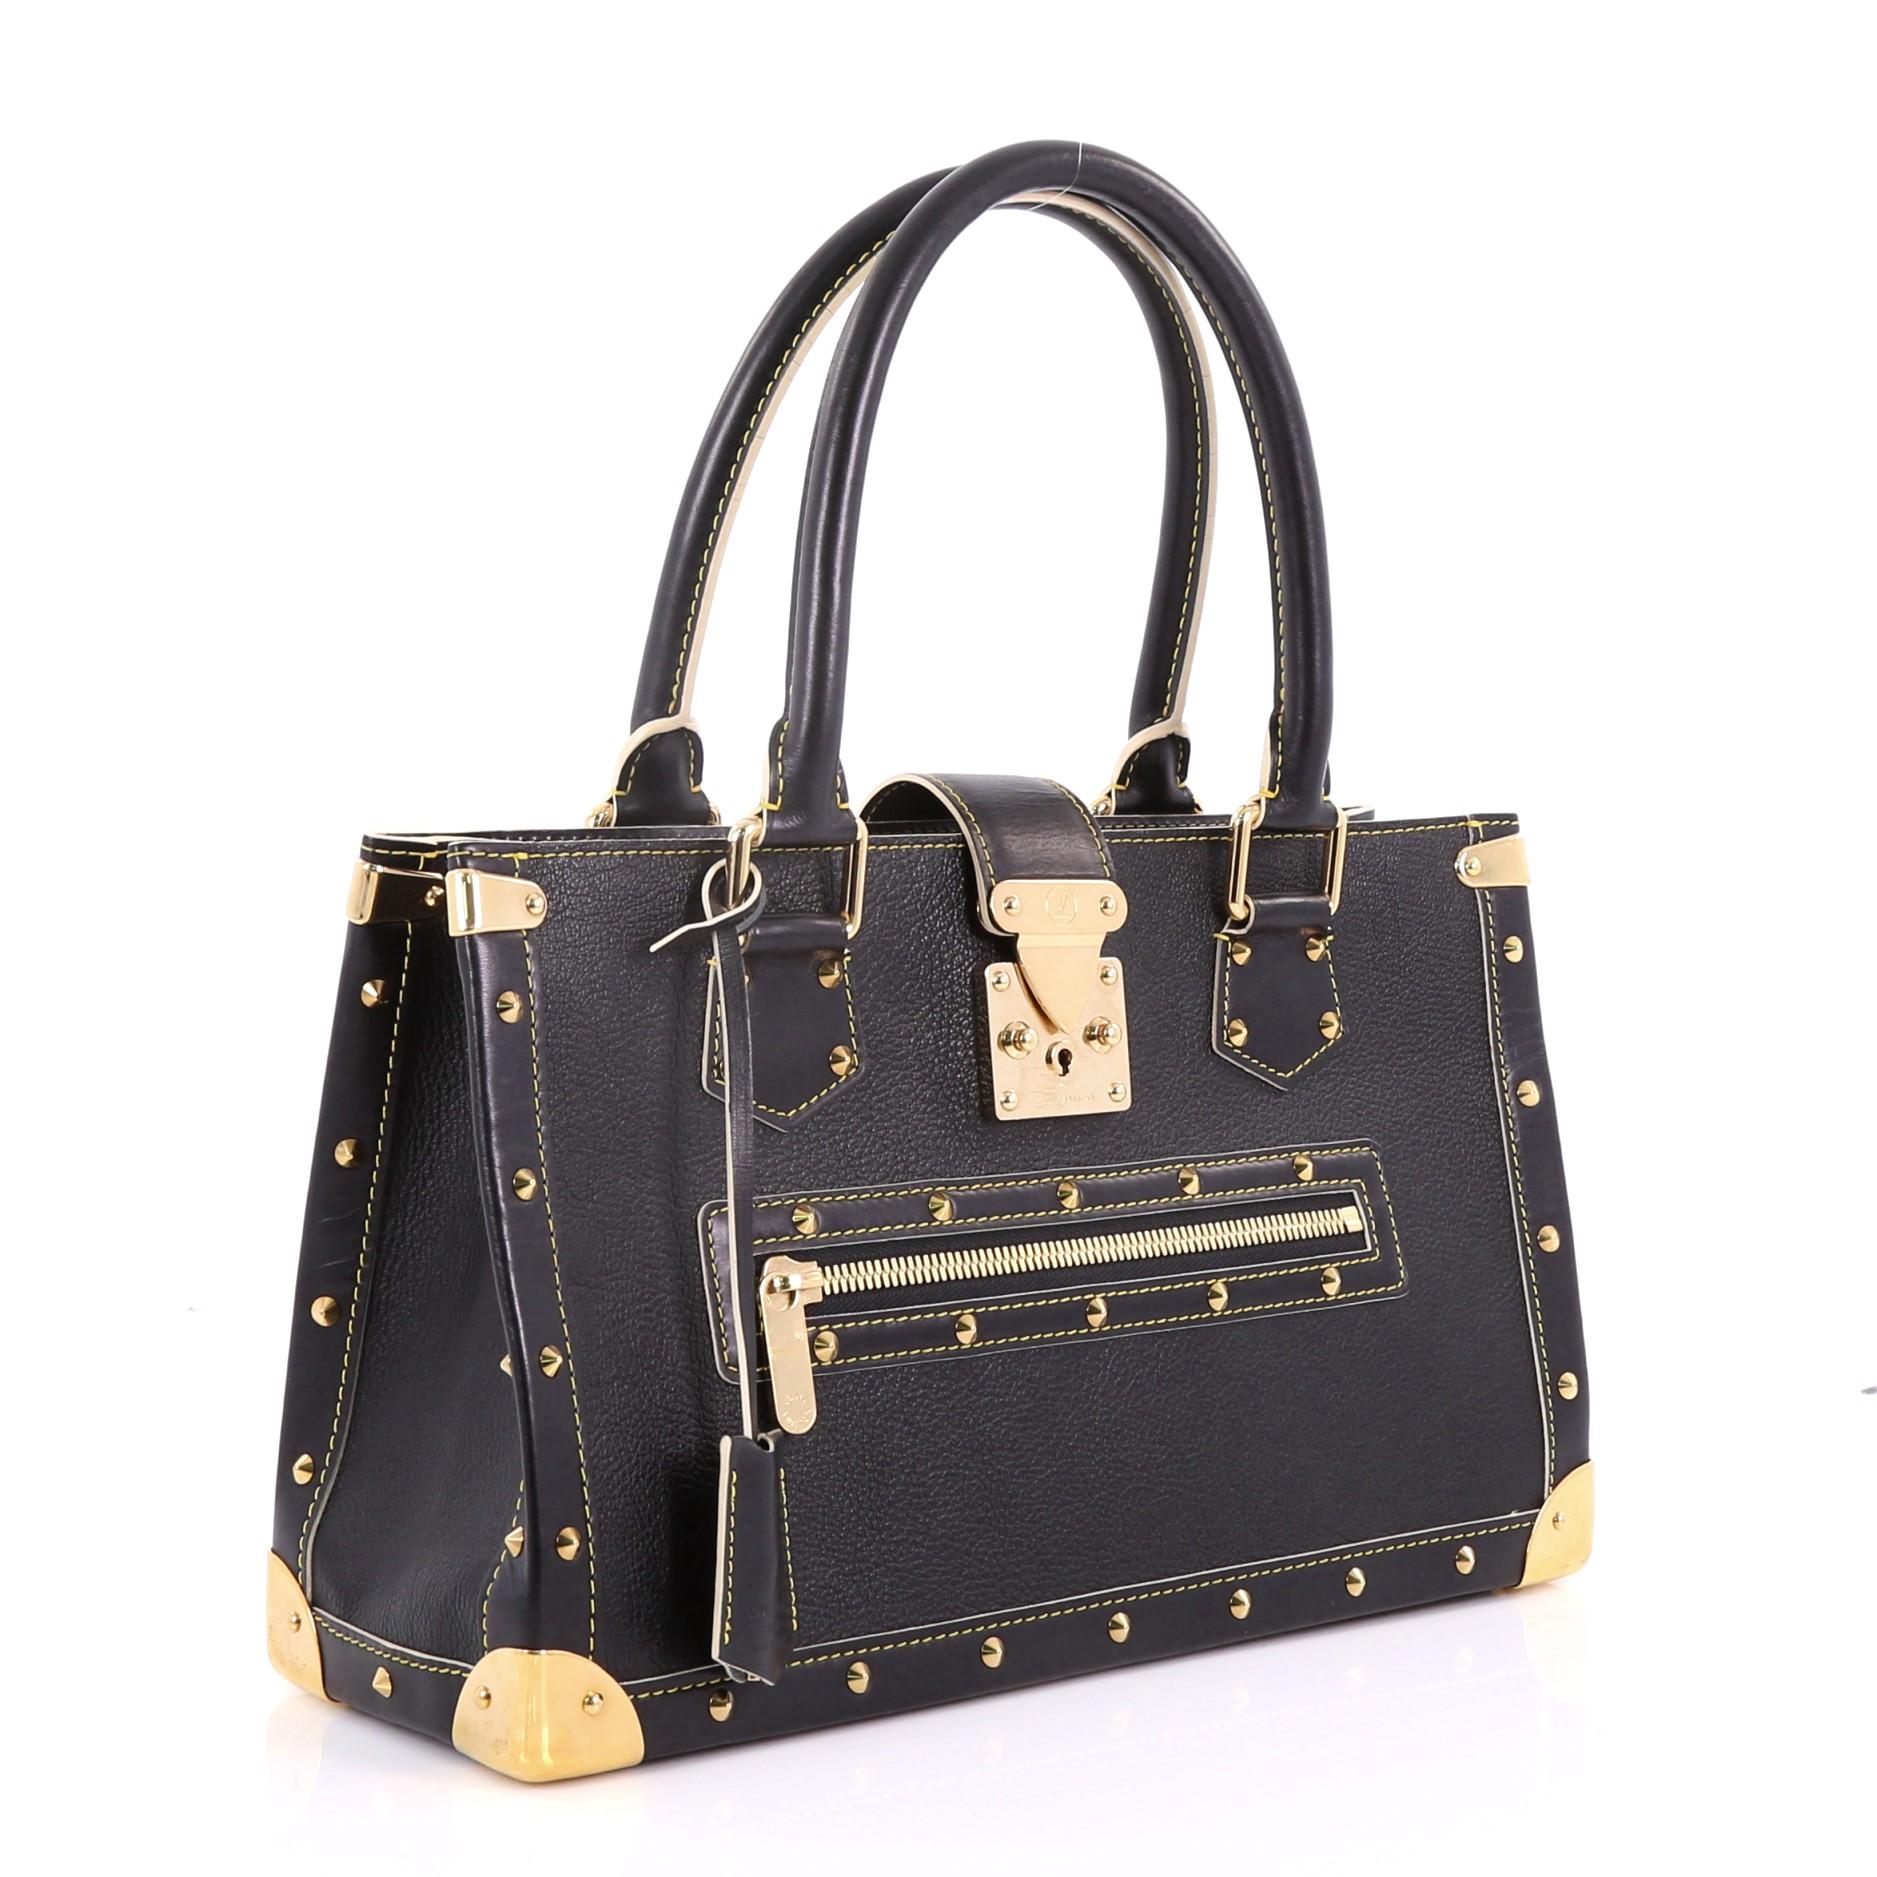 Black Louis Vuitton Suhali Le Fabuleux Handbag Leather,